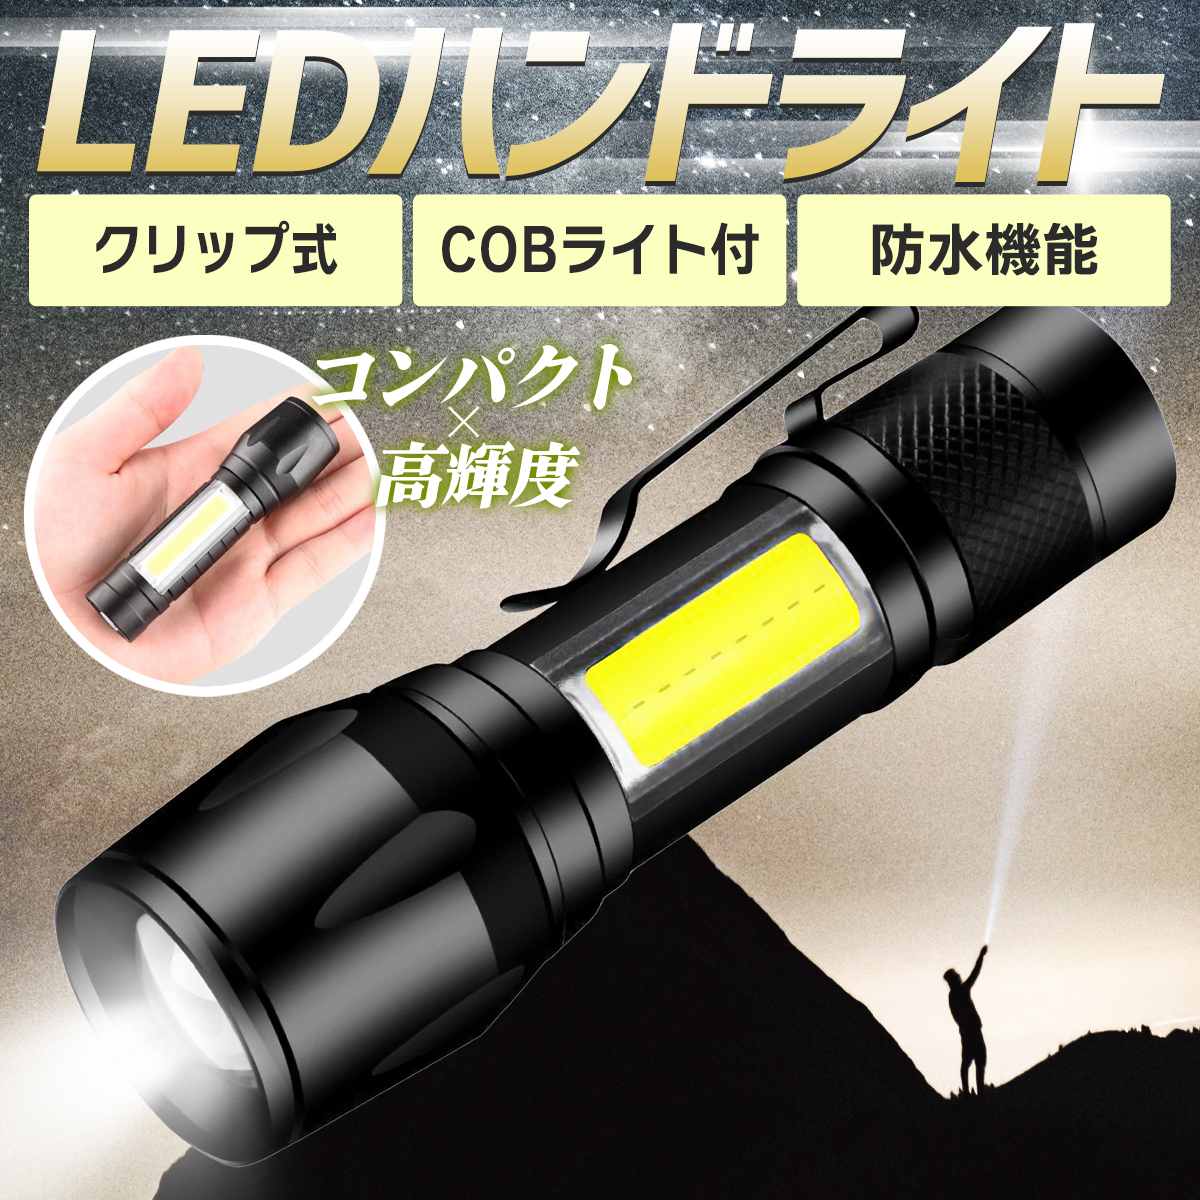 懐中電灯 LEDライト 強力 led ライト 充電式 ハンディライト 最強 cob